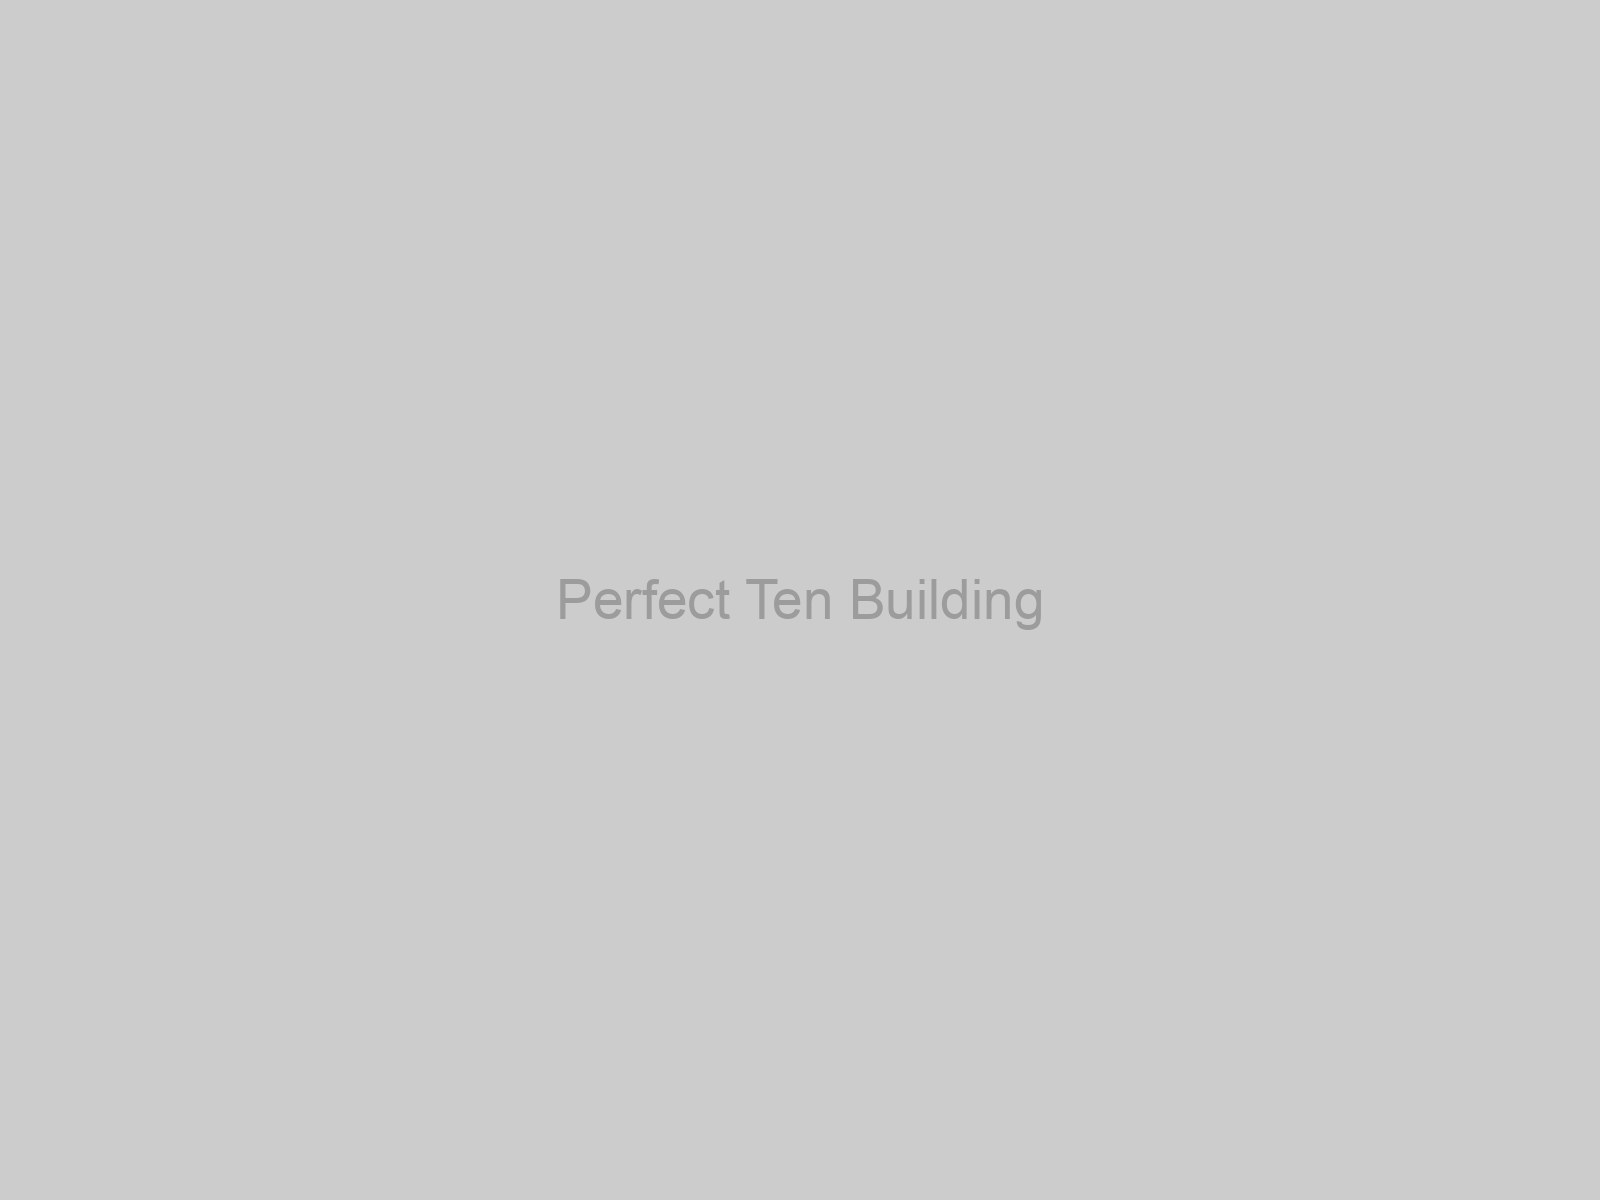 Perfect Ten Building